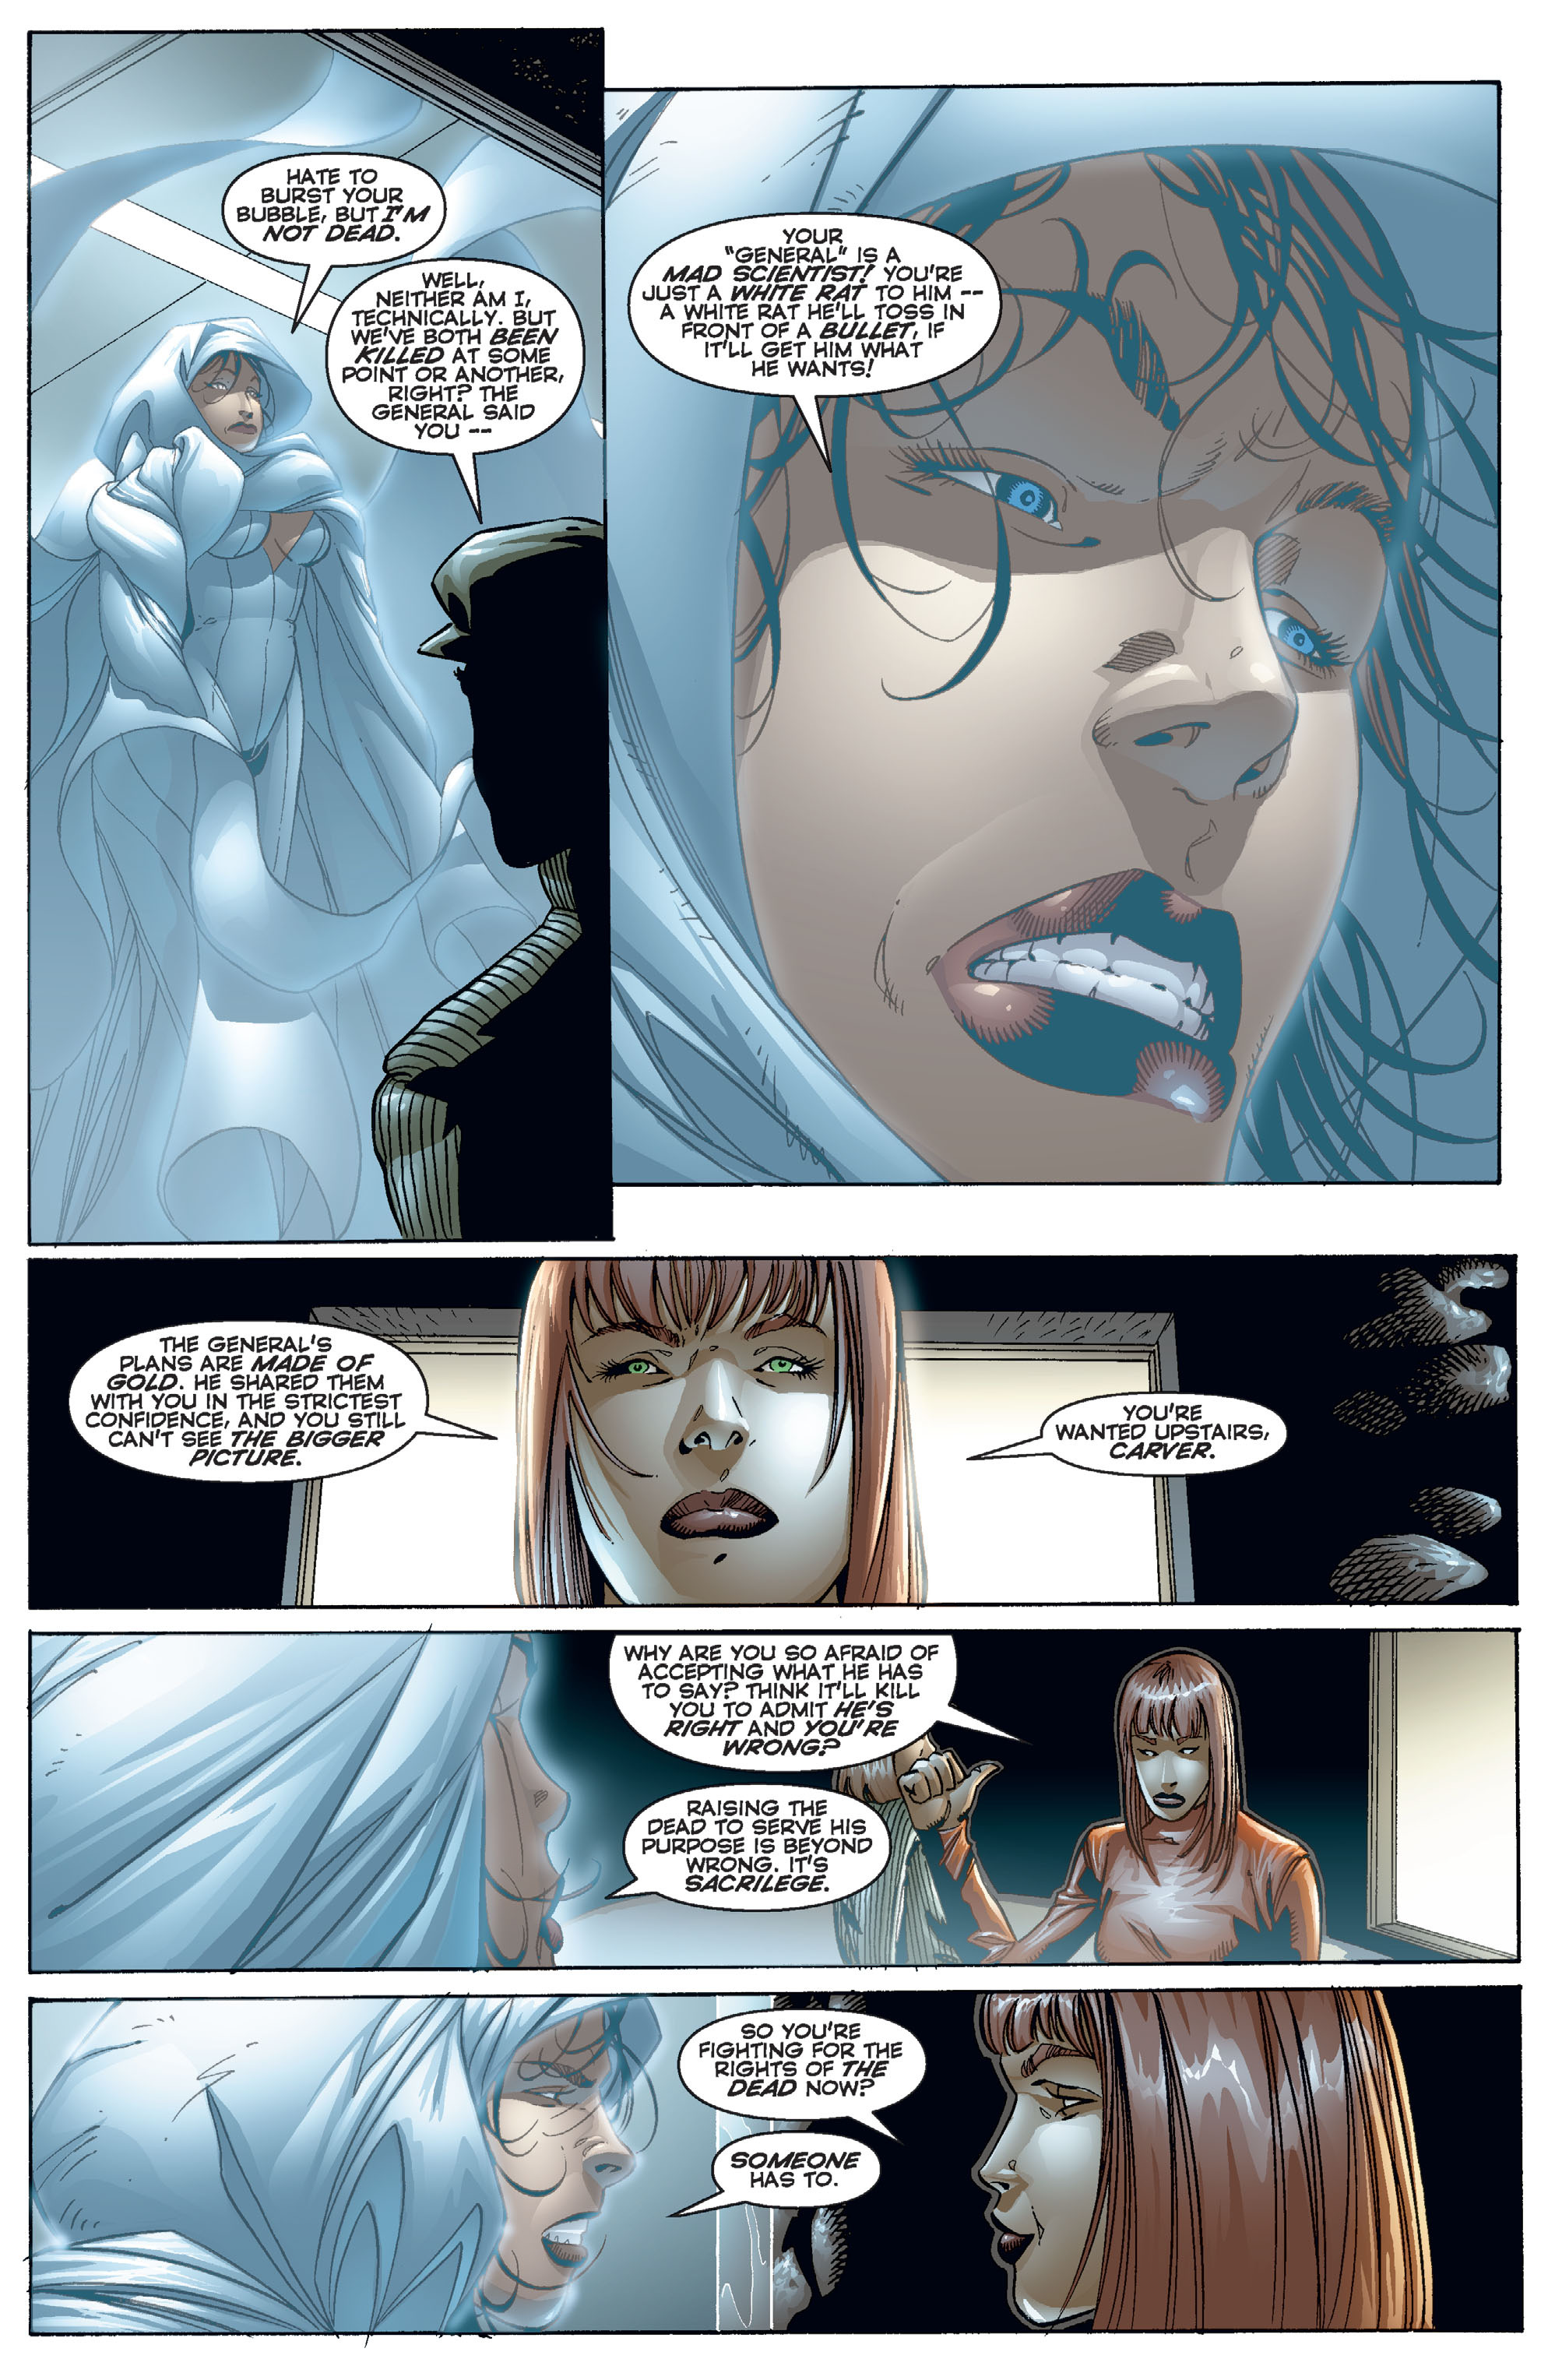 DC Comics/Dark Horse Comics: Justice League Full #1 - English 378